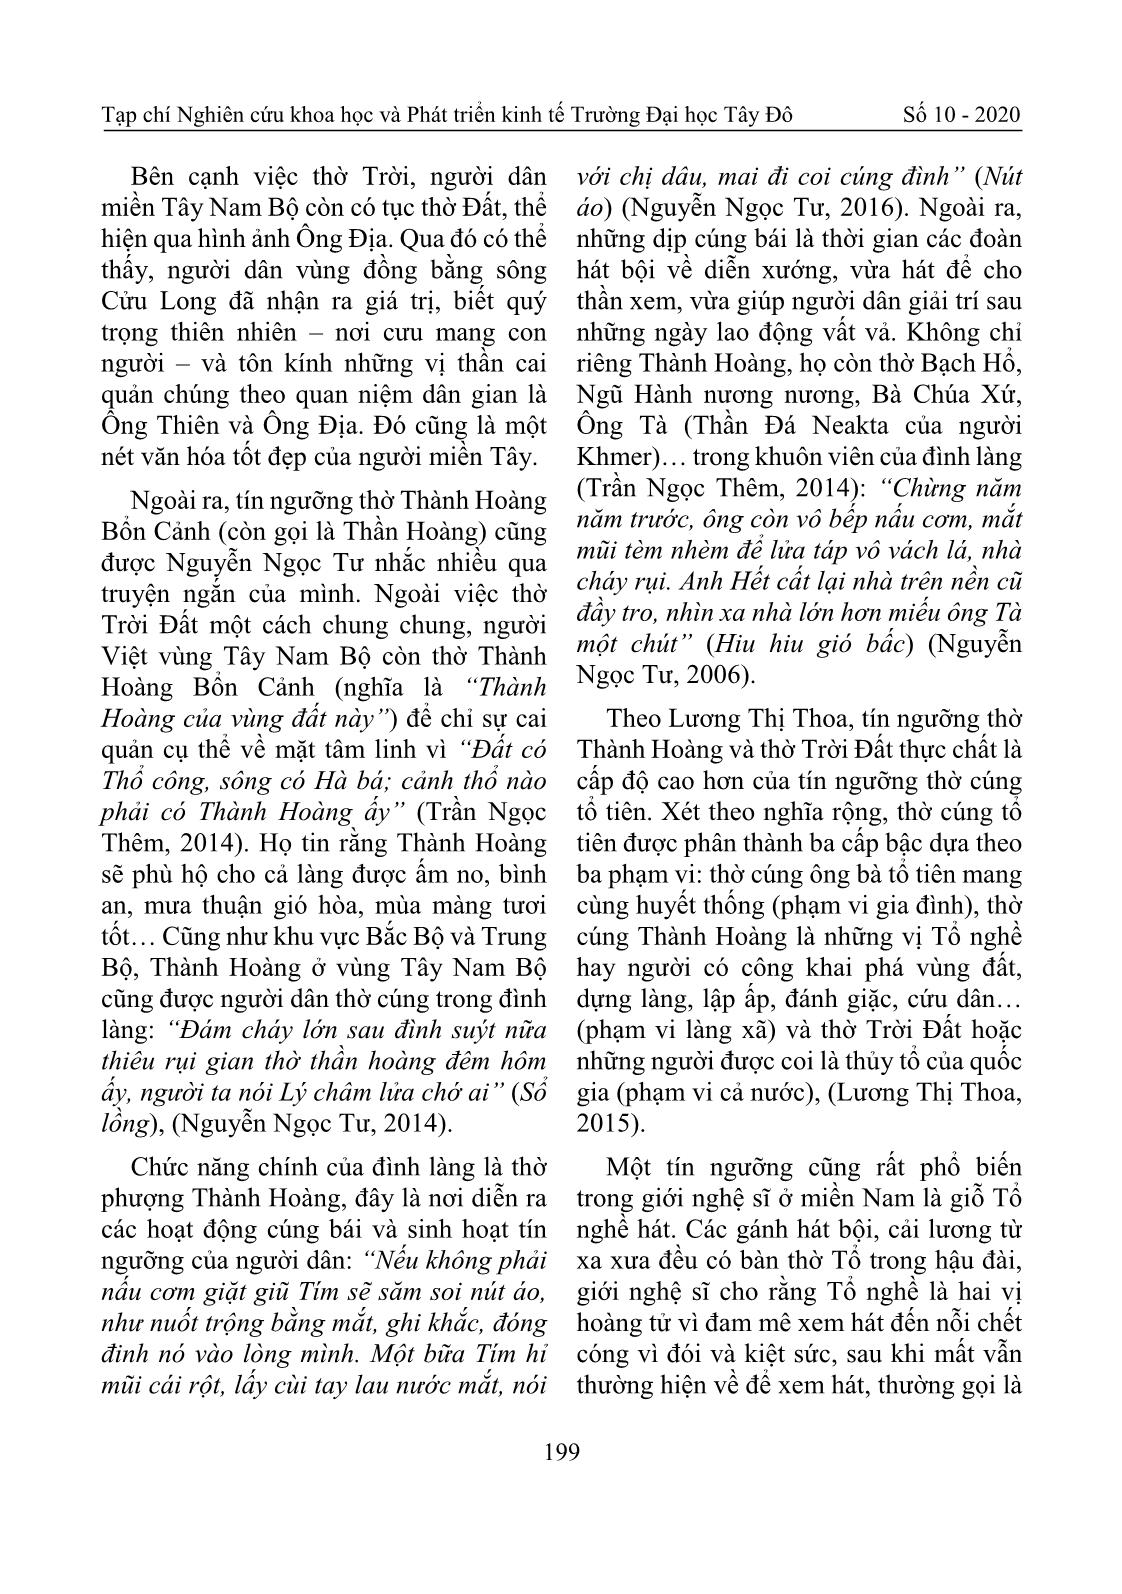 Tín ngưỡng và tôn giáo của người Việt vùng Tây Nam Bộ qua truyện ngắn của Nguyễn Ngọc Tư trang 6